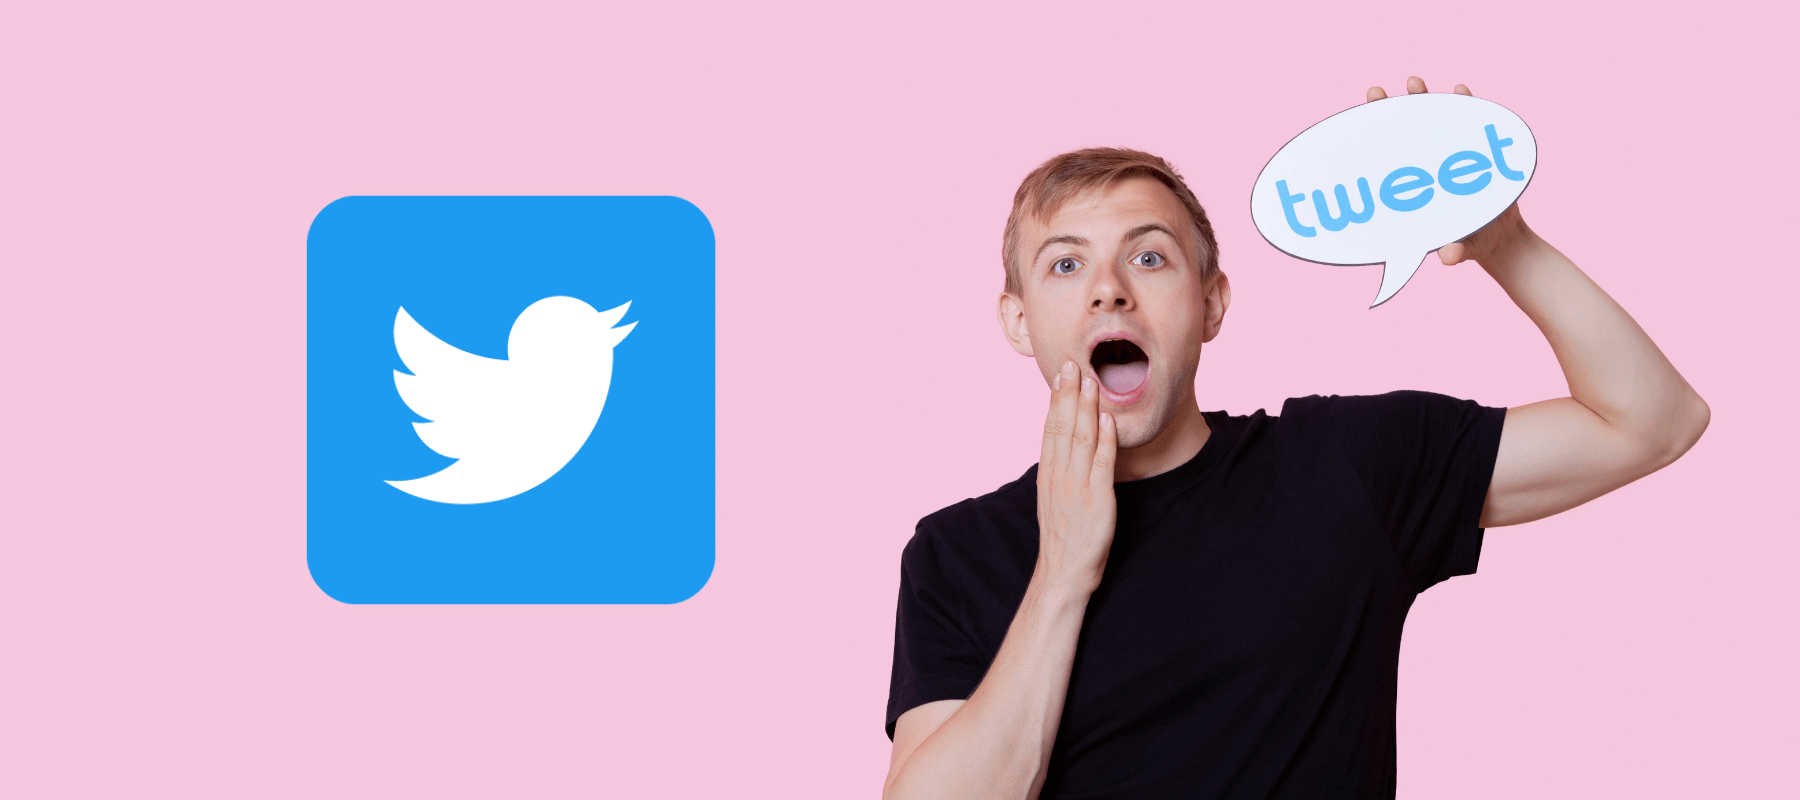 Jak získat rychle followery na Twitteru?